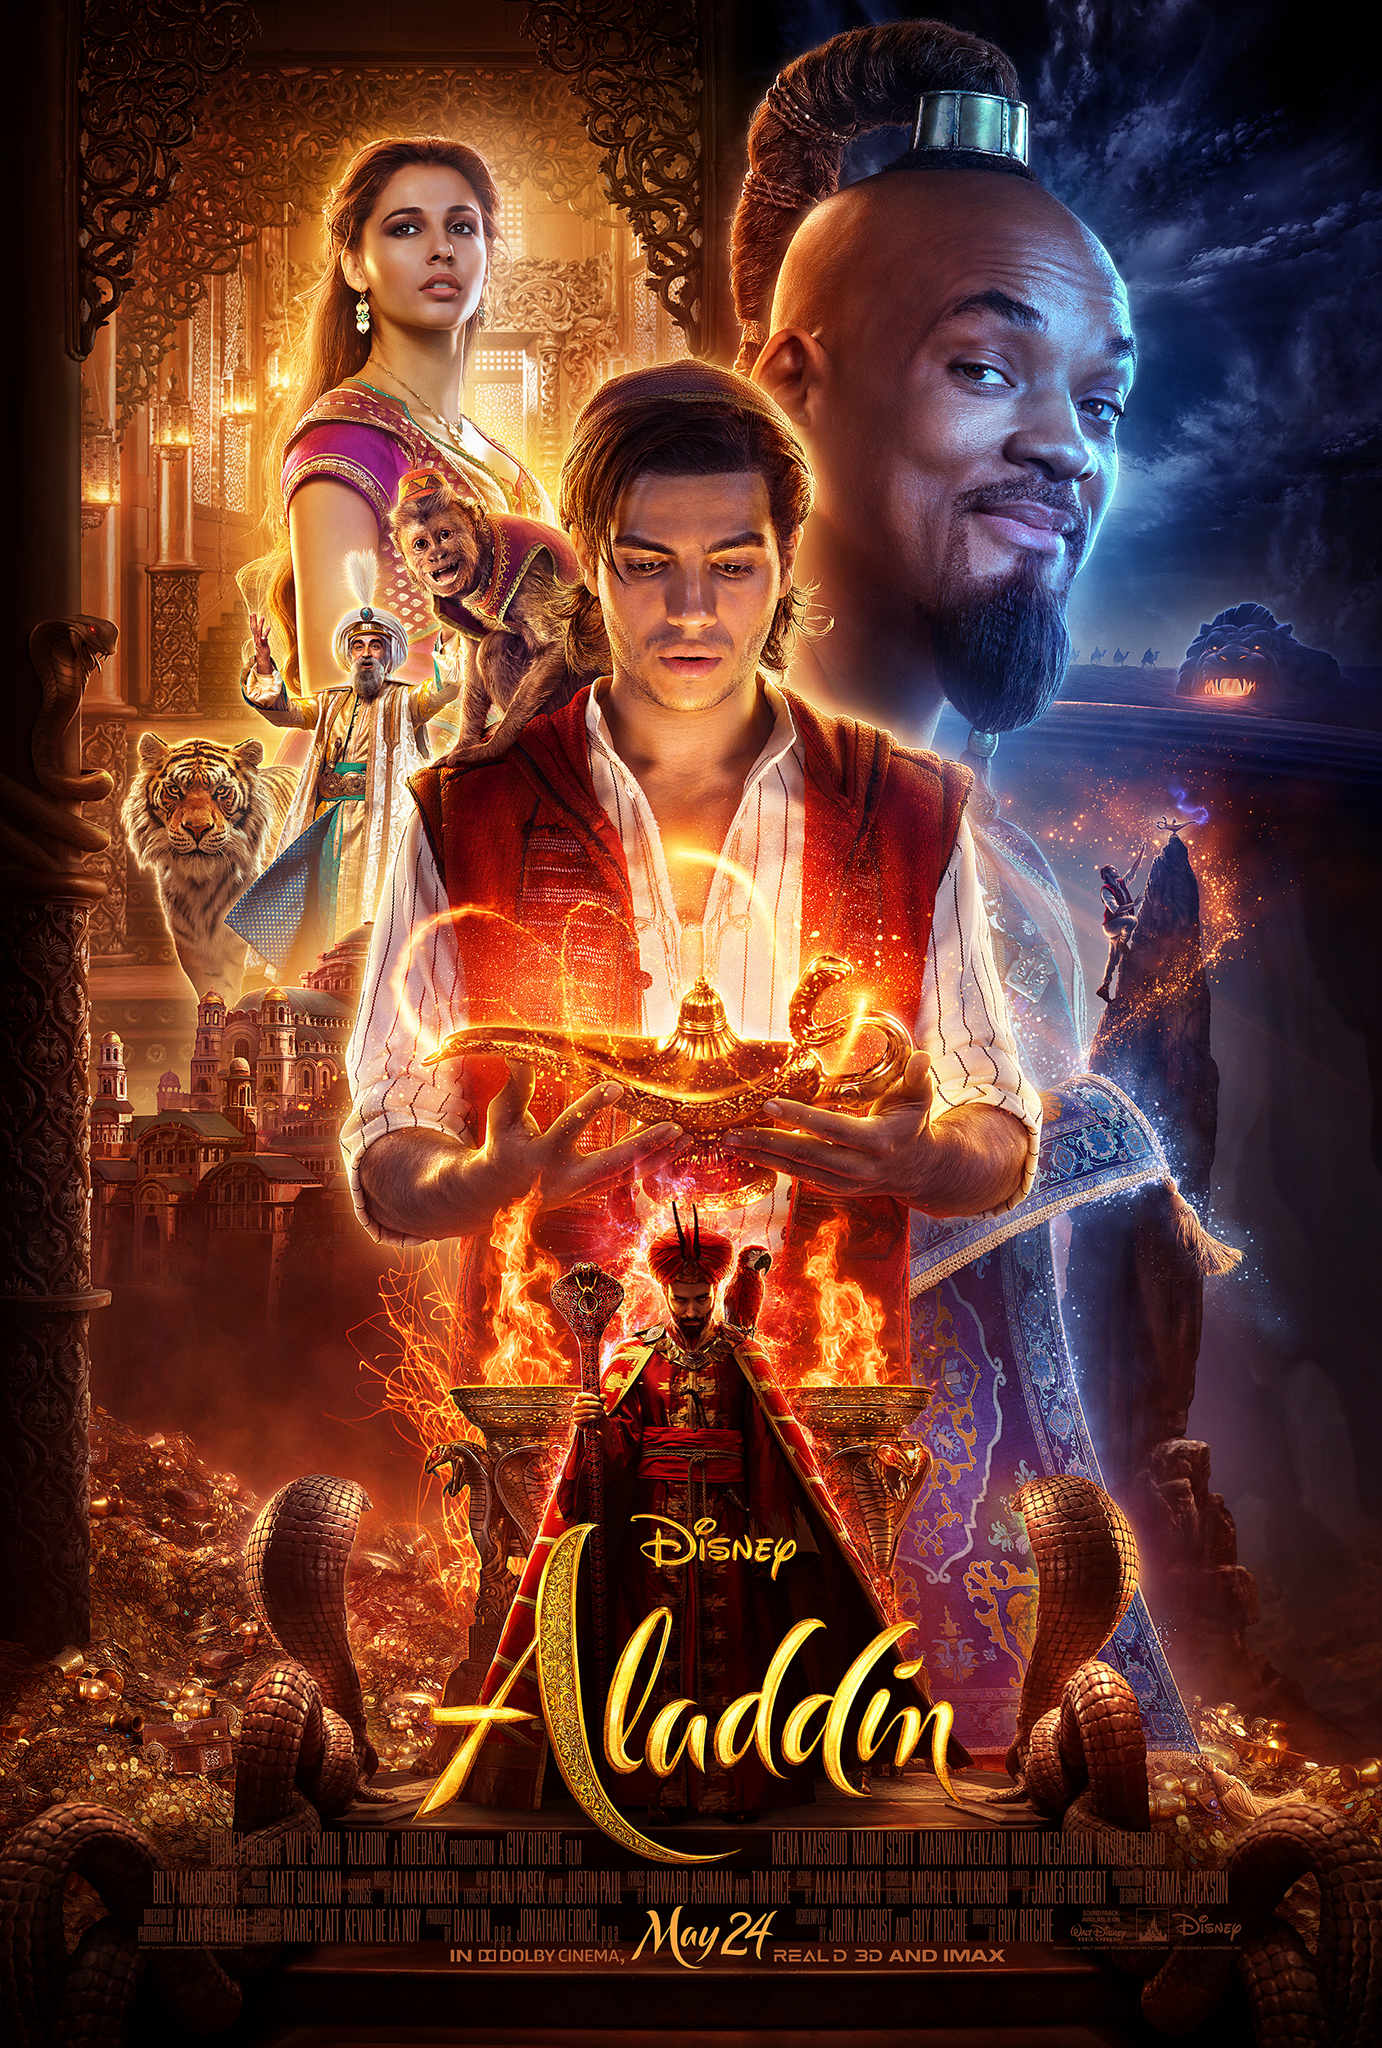 Stiahni si Filmy CZ/SK dabing Aladin / Aladdin (2019)(SK)[720p] = CSFD 67%